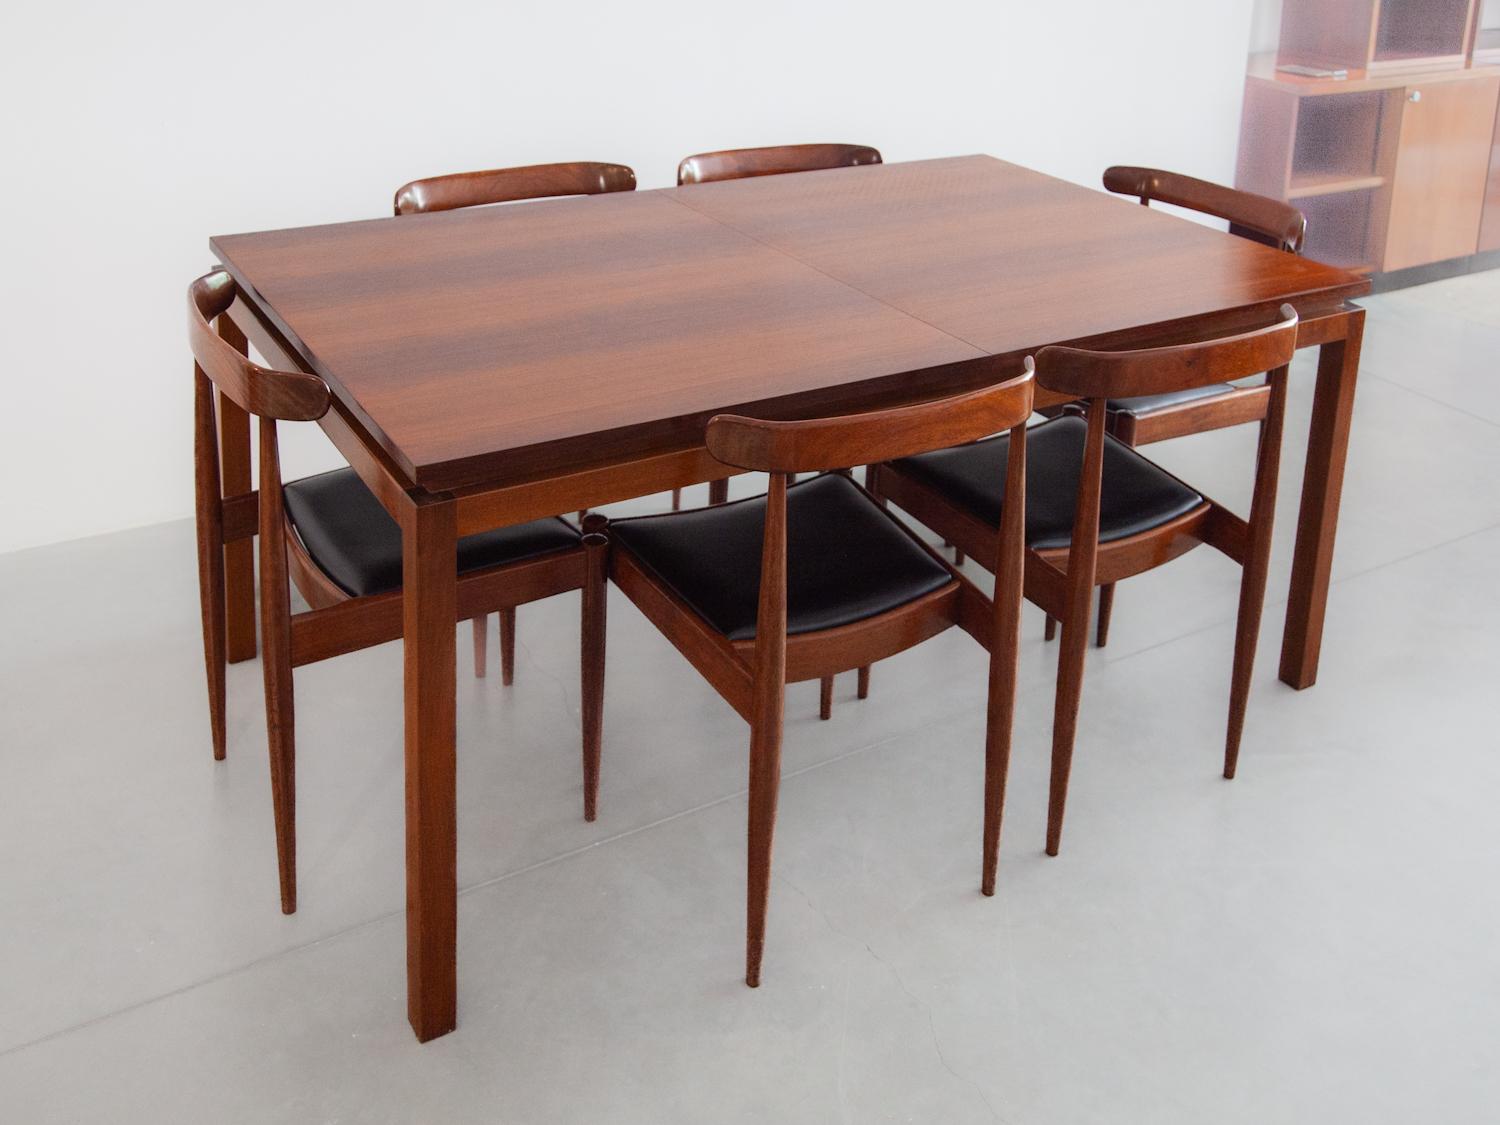 Minimalistischer, ausziehbarer Esstisch und passende 6er-Stühle, entworfen von Alfred Hendrickx für Belform. Ein schönes minimalistisches Set mit einer schönen Holzmaserung und in einem perfekten Zustand. Der Tisch ist in der Mitte auf eine